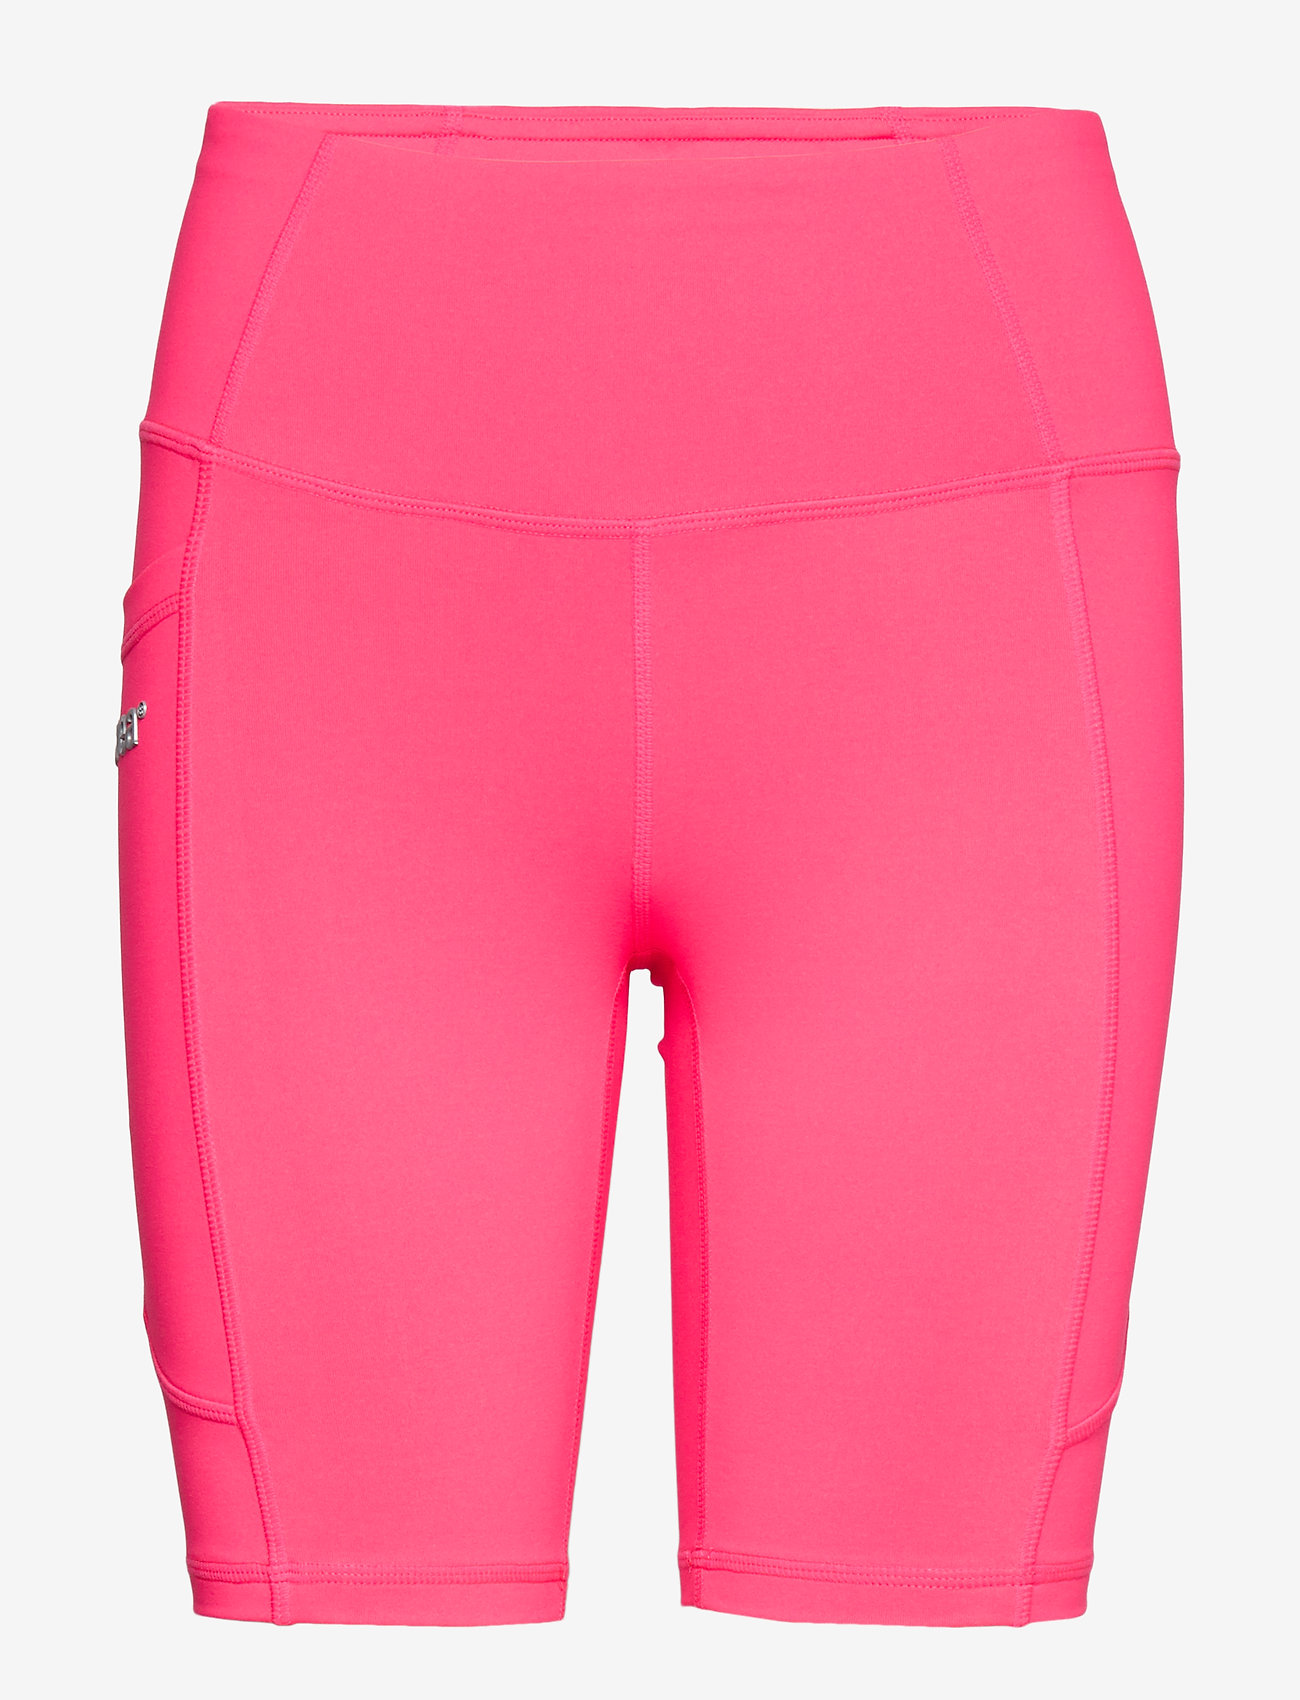 Svea - Svea Sport Shorts - treenishortsit - neon pink - 0